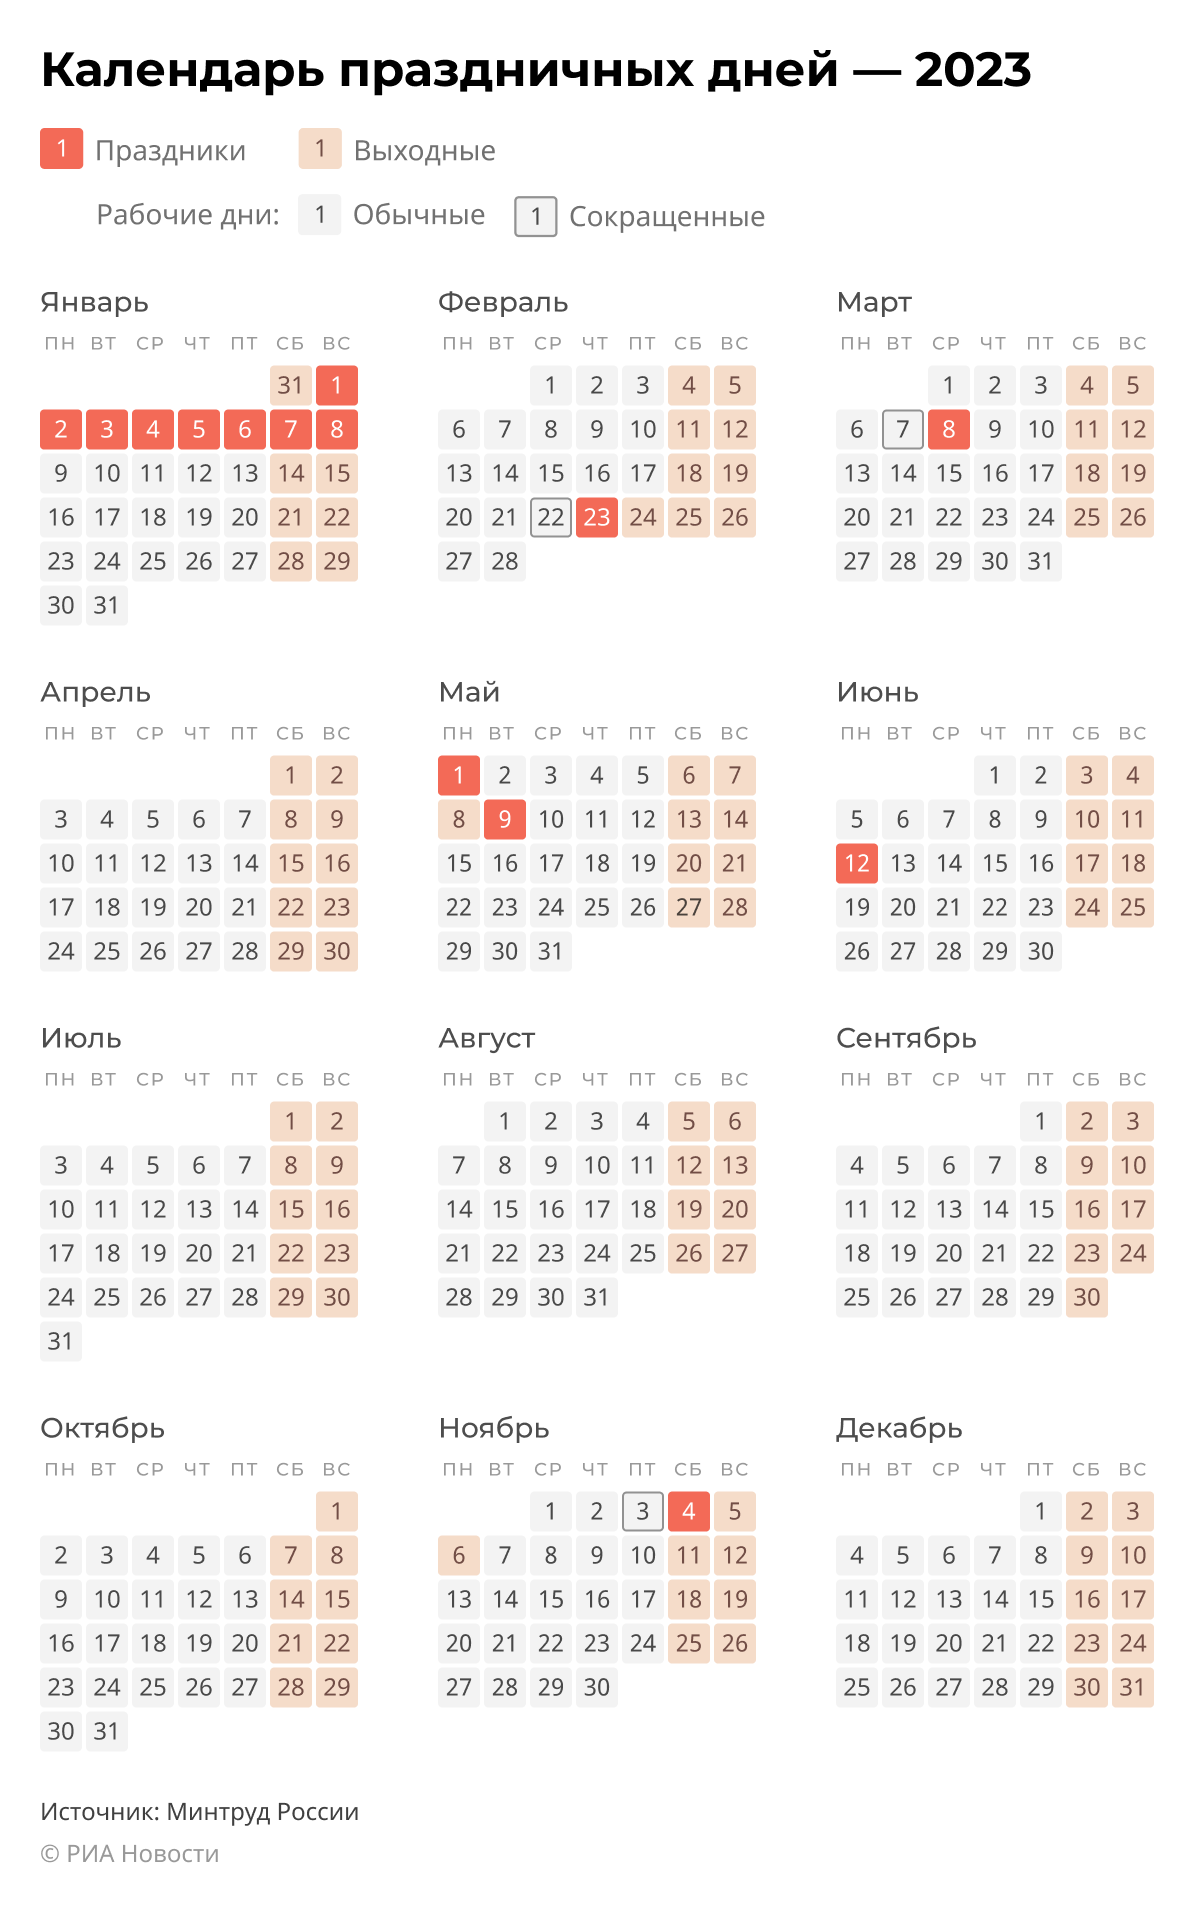 Как отдыхаем в марте 2023: выходные дни и праздники